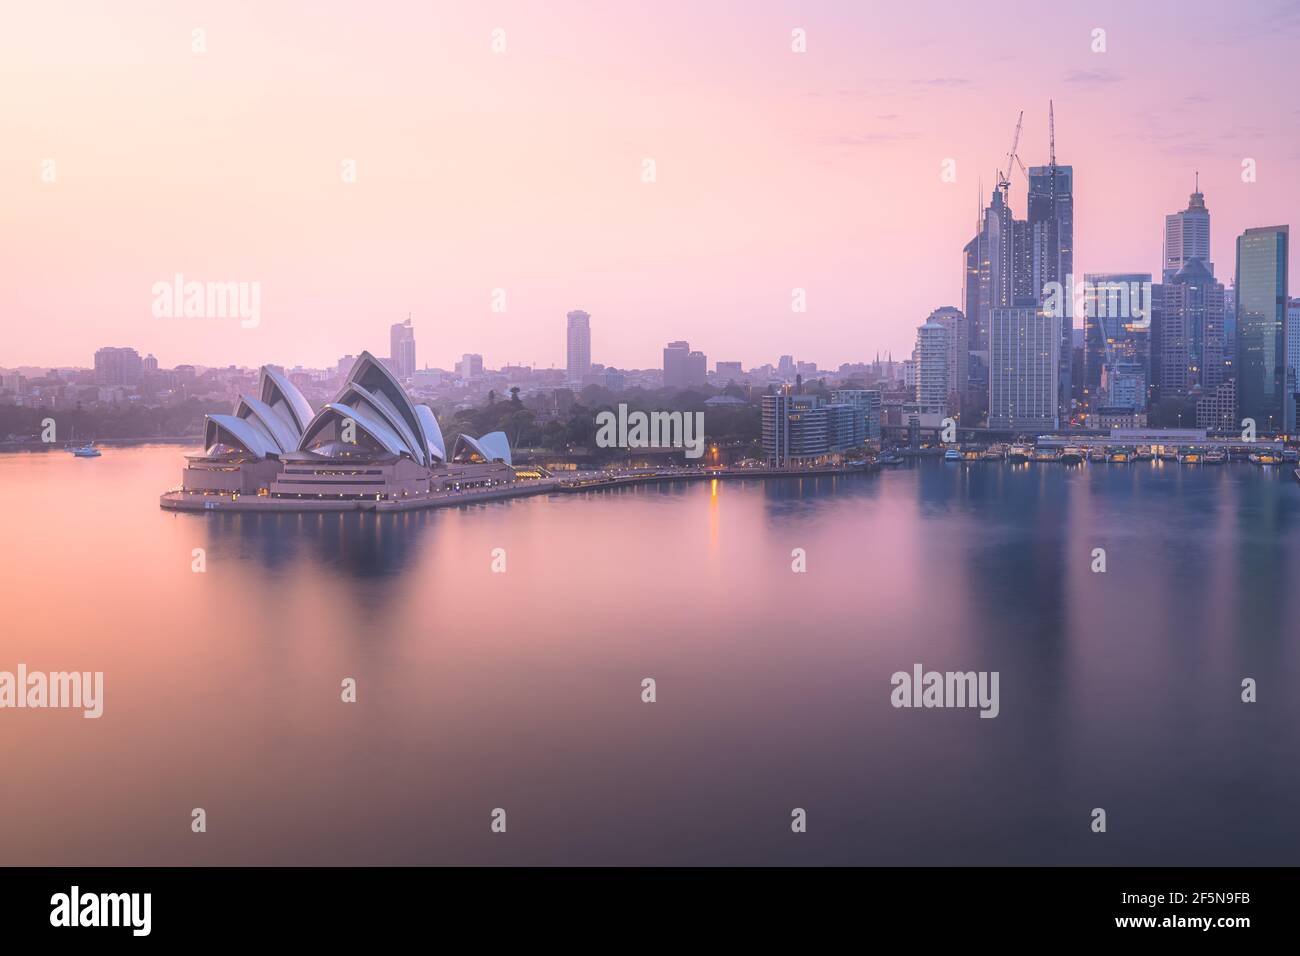 Magnifique lever de soleil doré ou coucher de soleil sur la vue panoramique de la ville depuis le Harbour Bridge au-dessus de Sydney Harbour Skyline et opéra en Nouvelle-Galles du Sud, en Australie. Banque D'Images